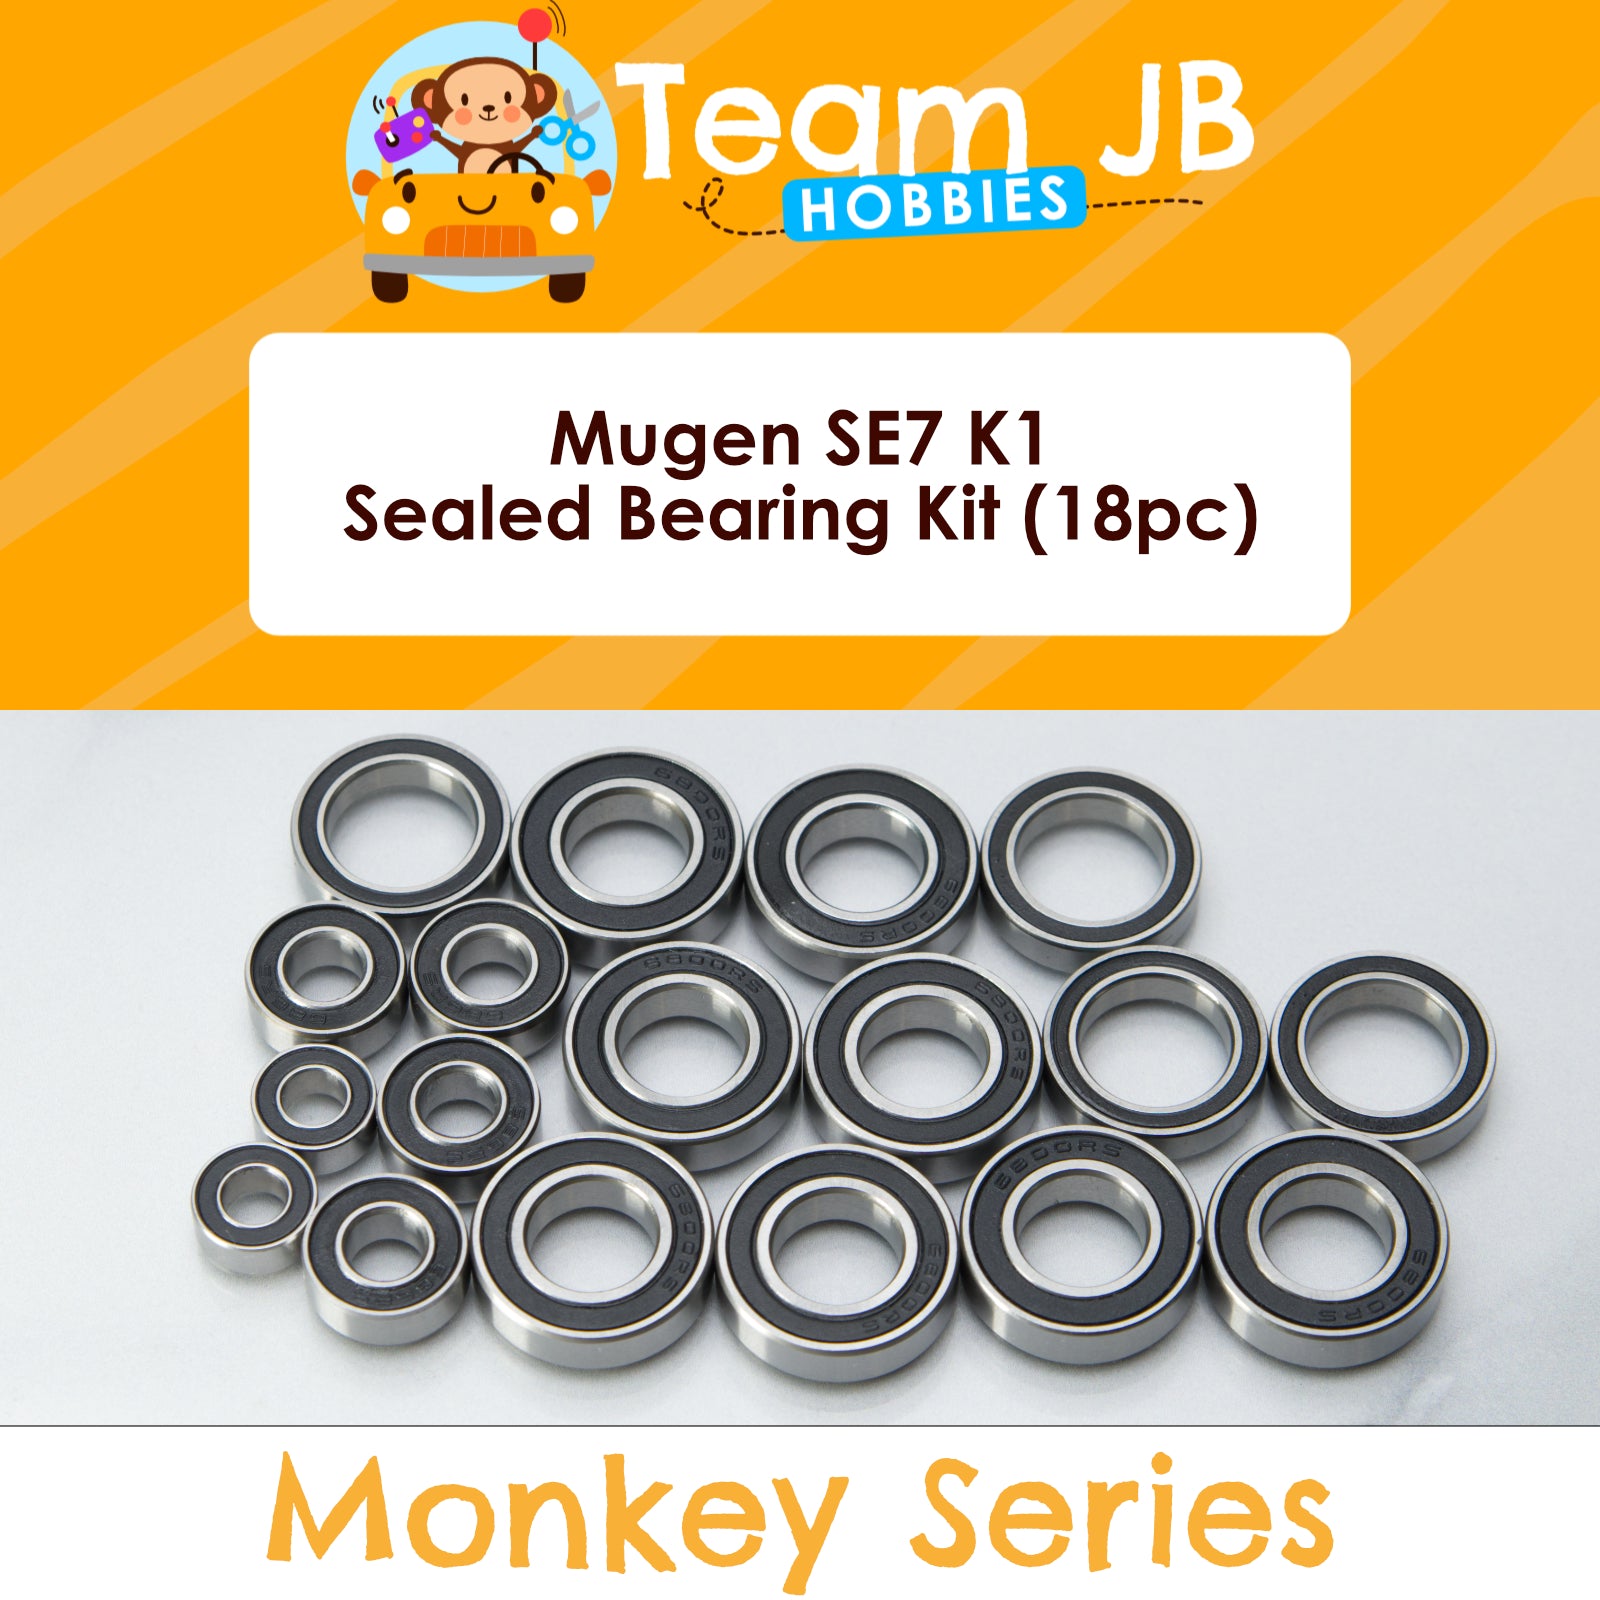 Mugen SE7 K1 - Sealed Bearing Kit